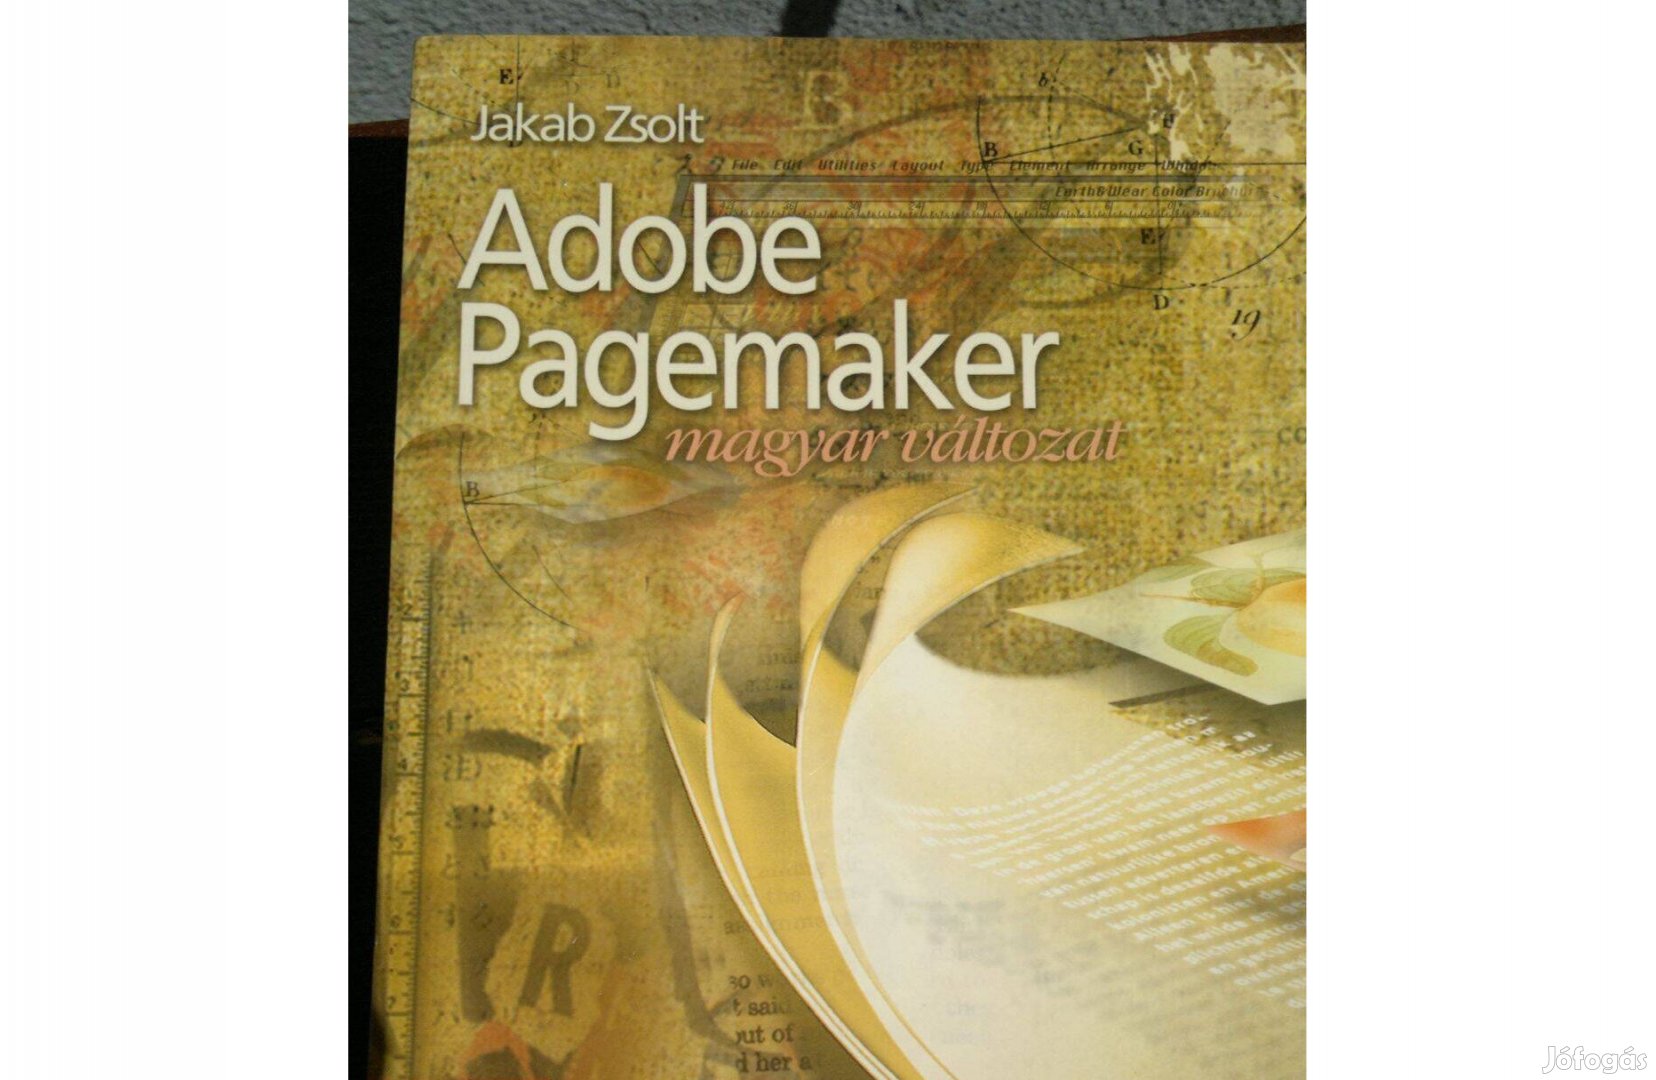 Adobe Pagemaker magyar változat:Jakab Zsolt cd nélkűl